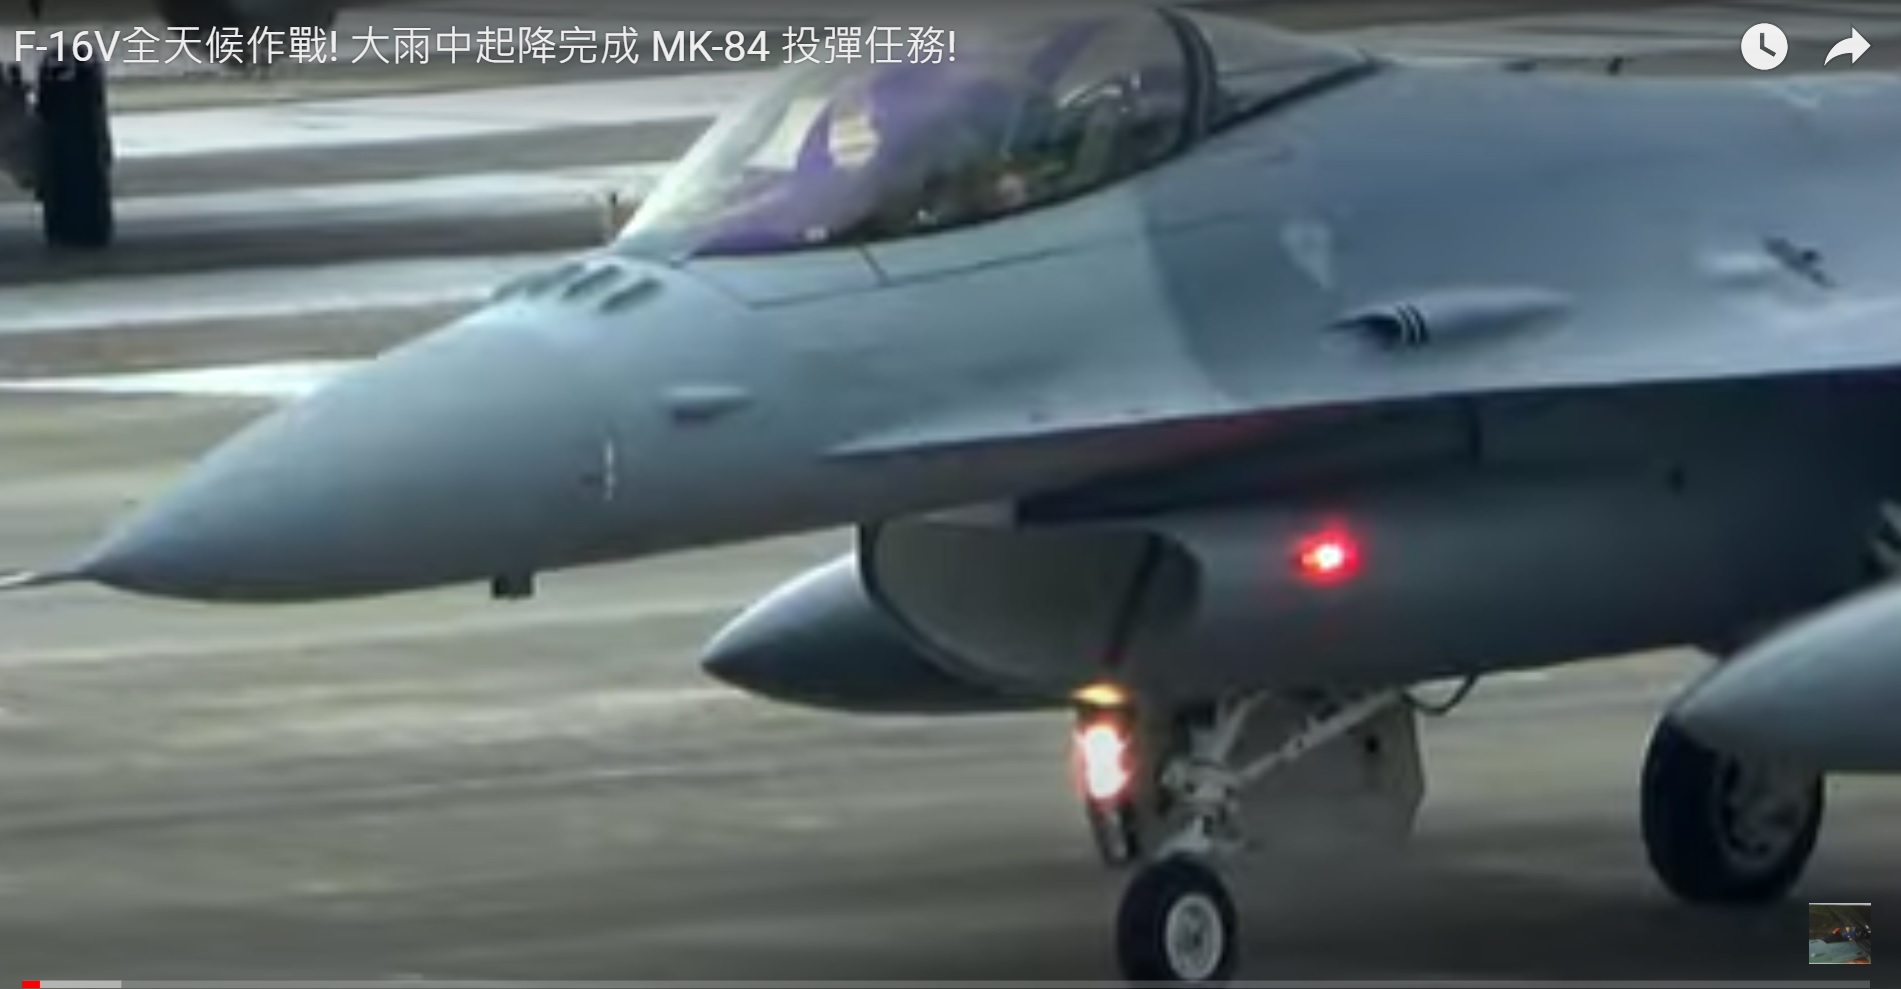 F-16V全天候作戰! 大雨中起降完成 MK-84 投彈任務!